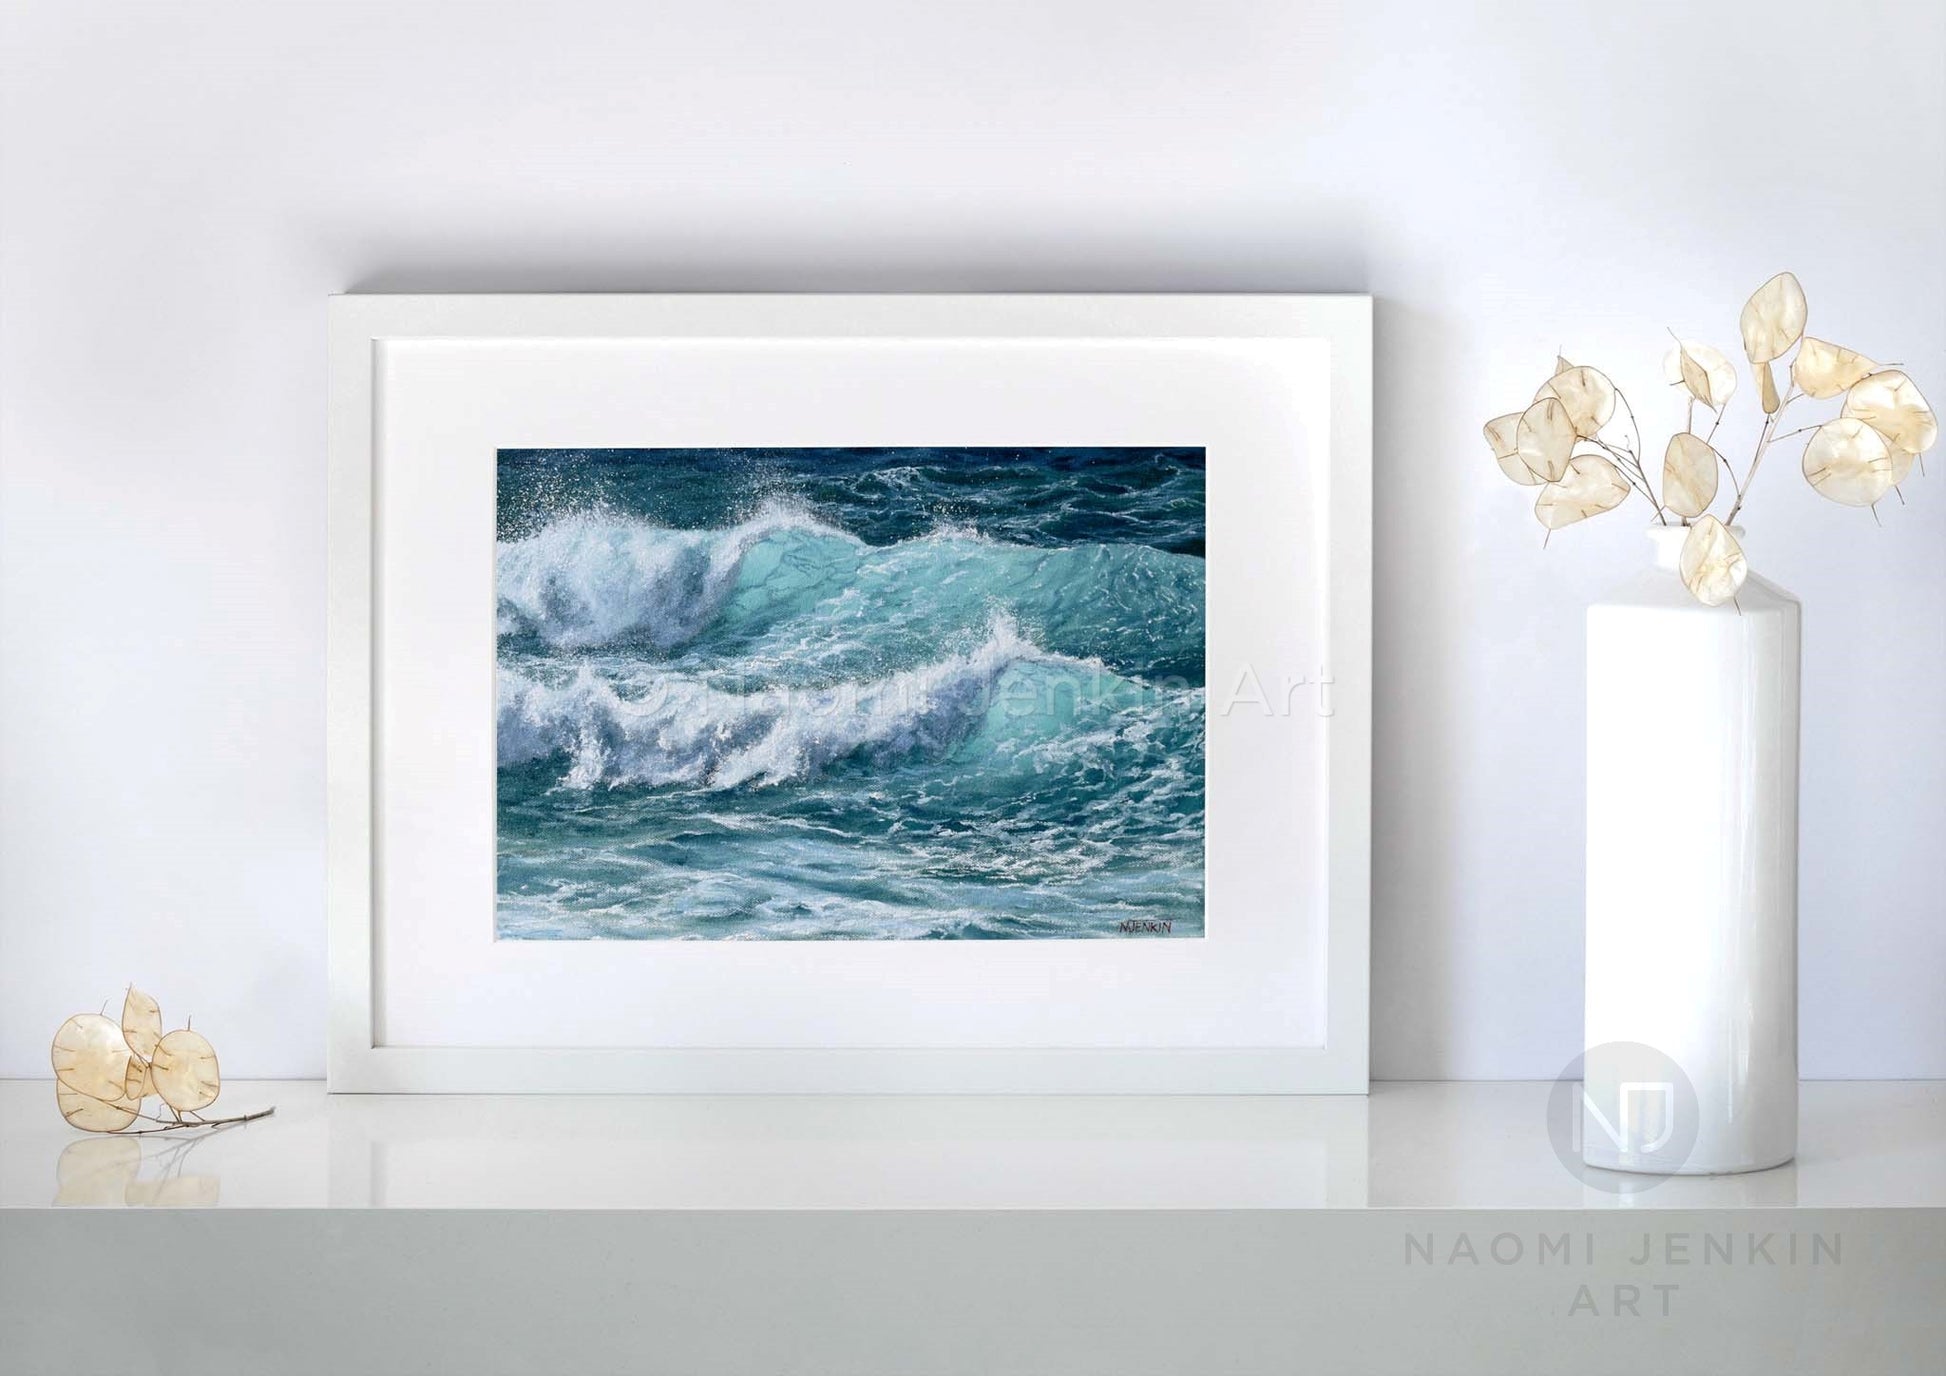 Seascape prints by Naomi Jenkin Art